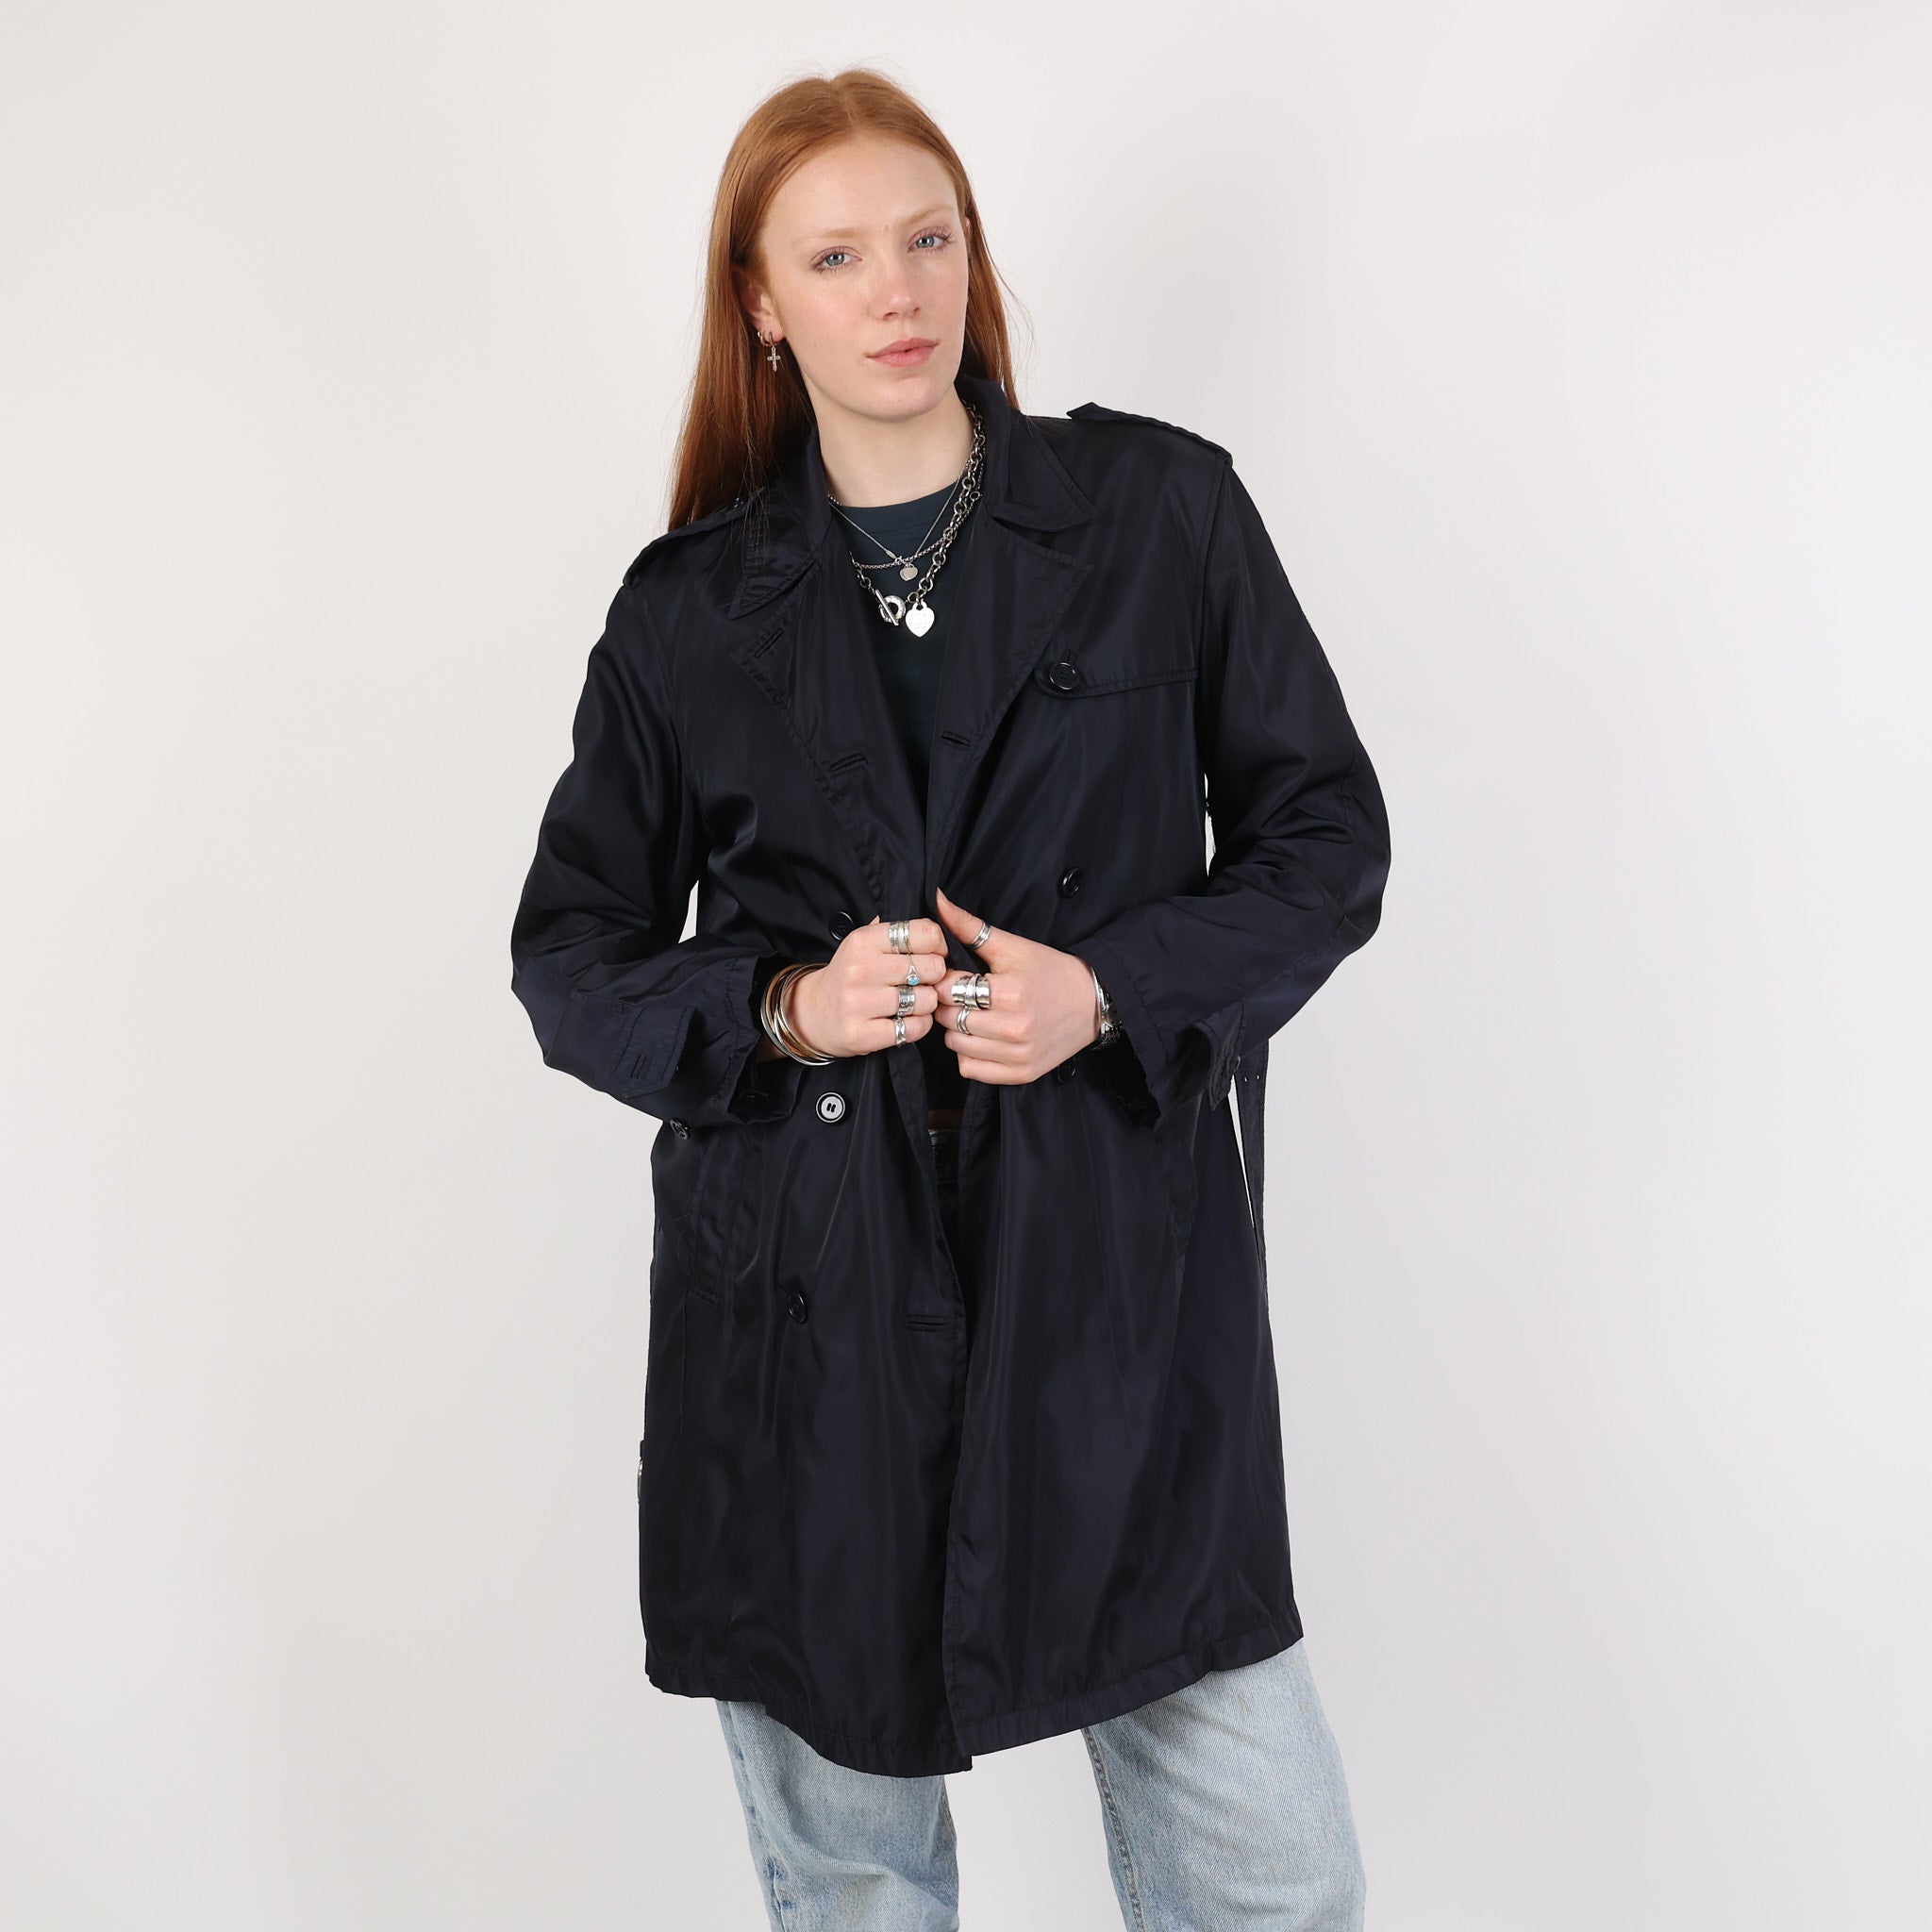 Jacket, UK Size 10